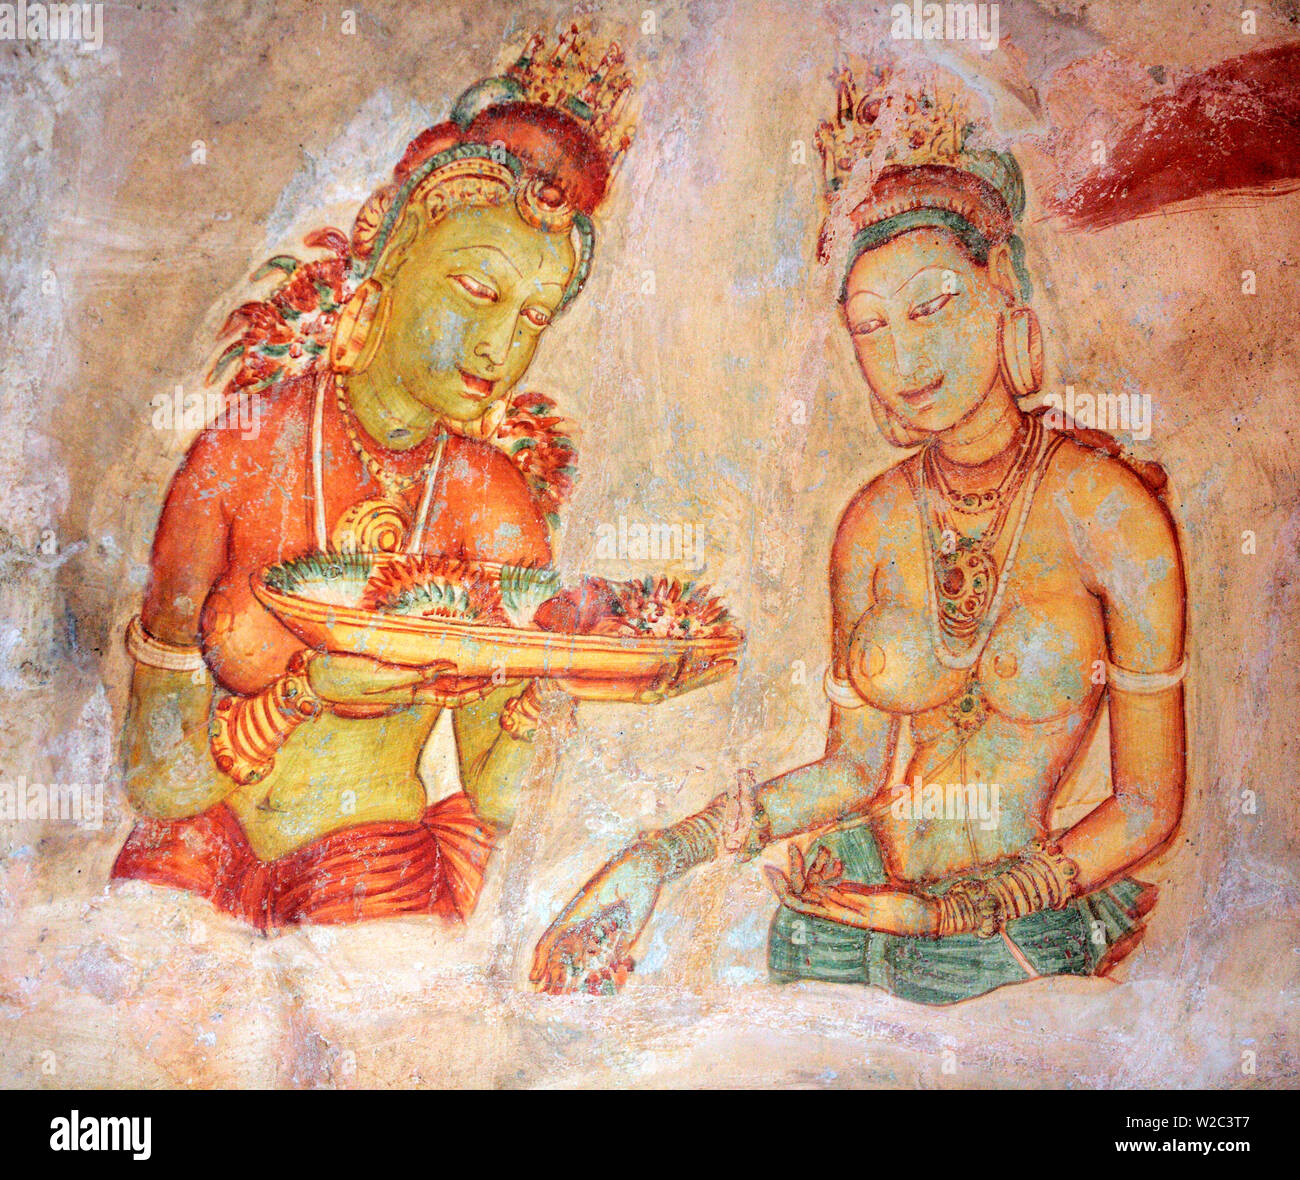 Mural painting (6th century), Sigiriya, Sri Lanka Stock Photo